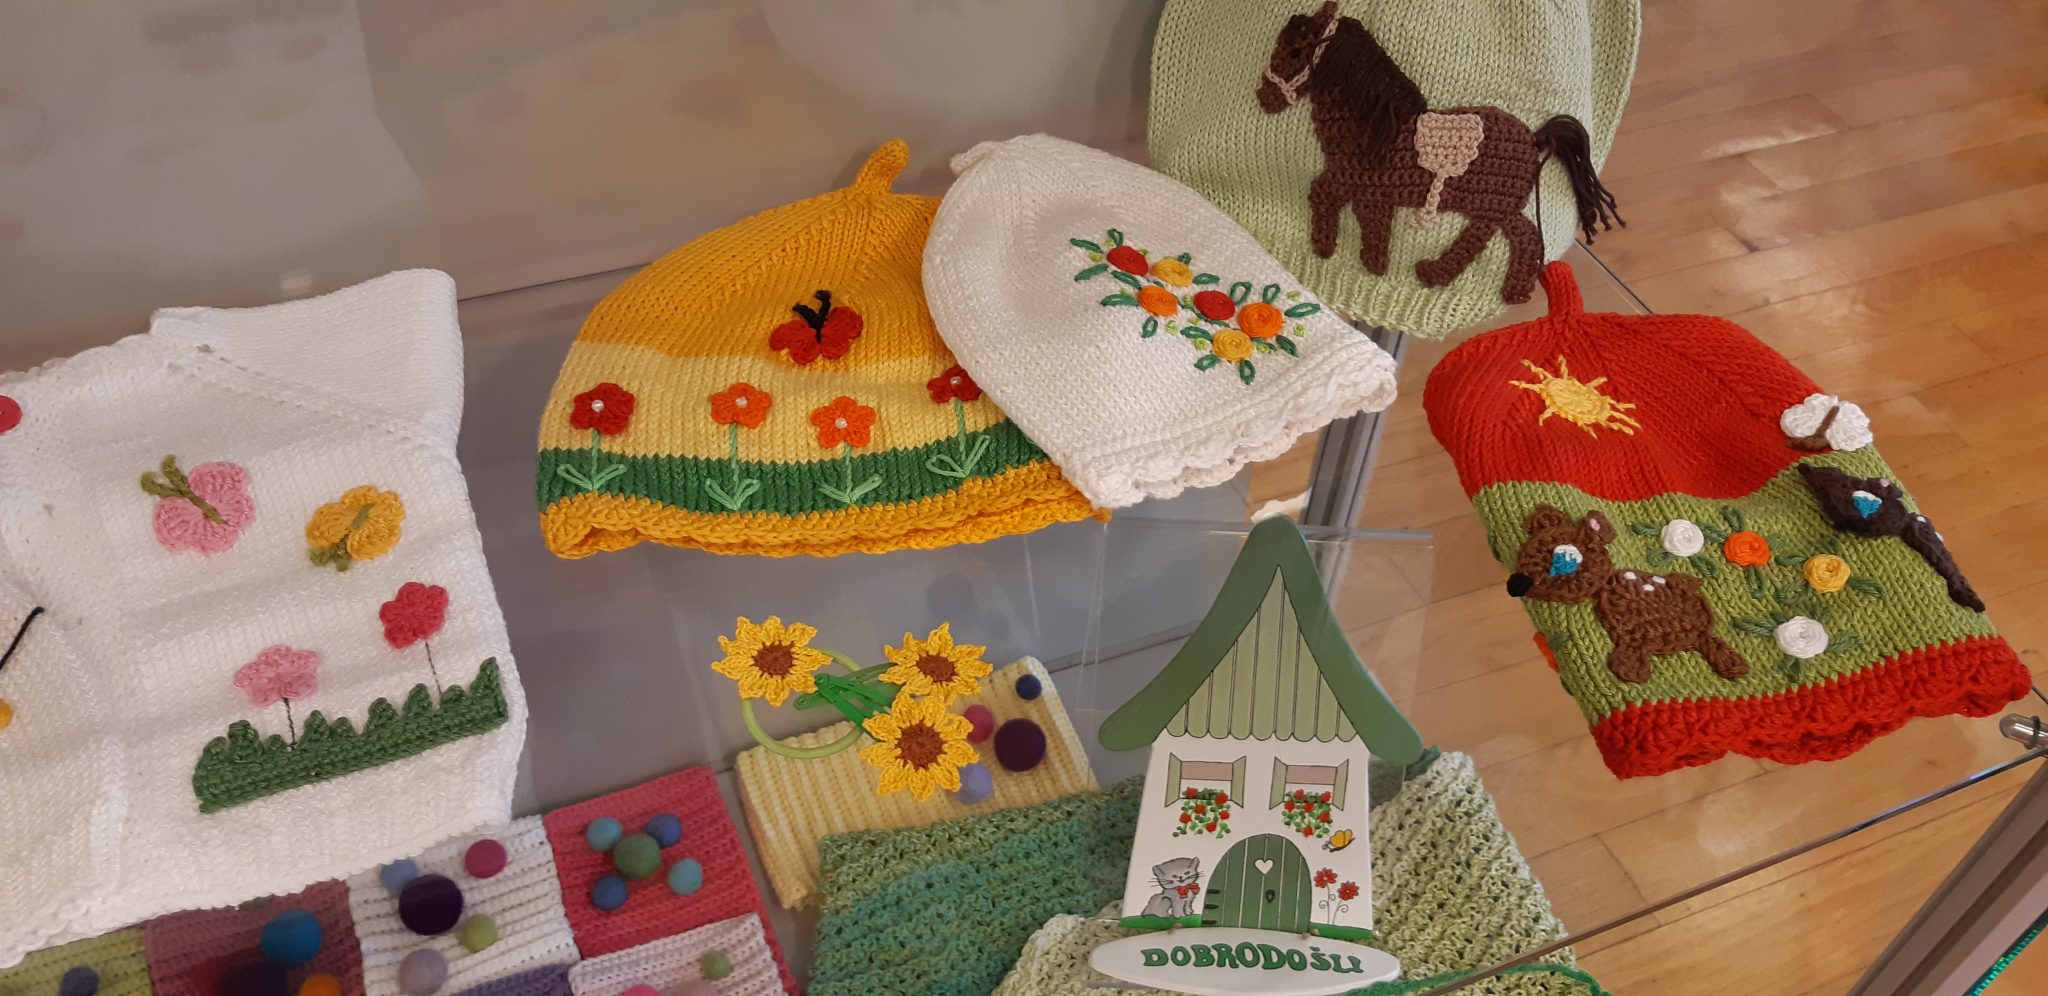 20190225 132355 - Darja Bajc - razstava pletenih in kvačkanih izdelkov za najmlajše